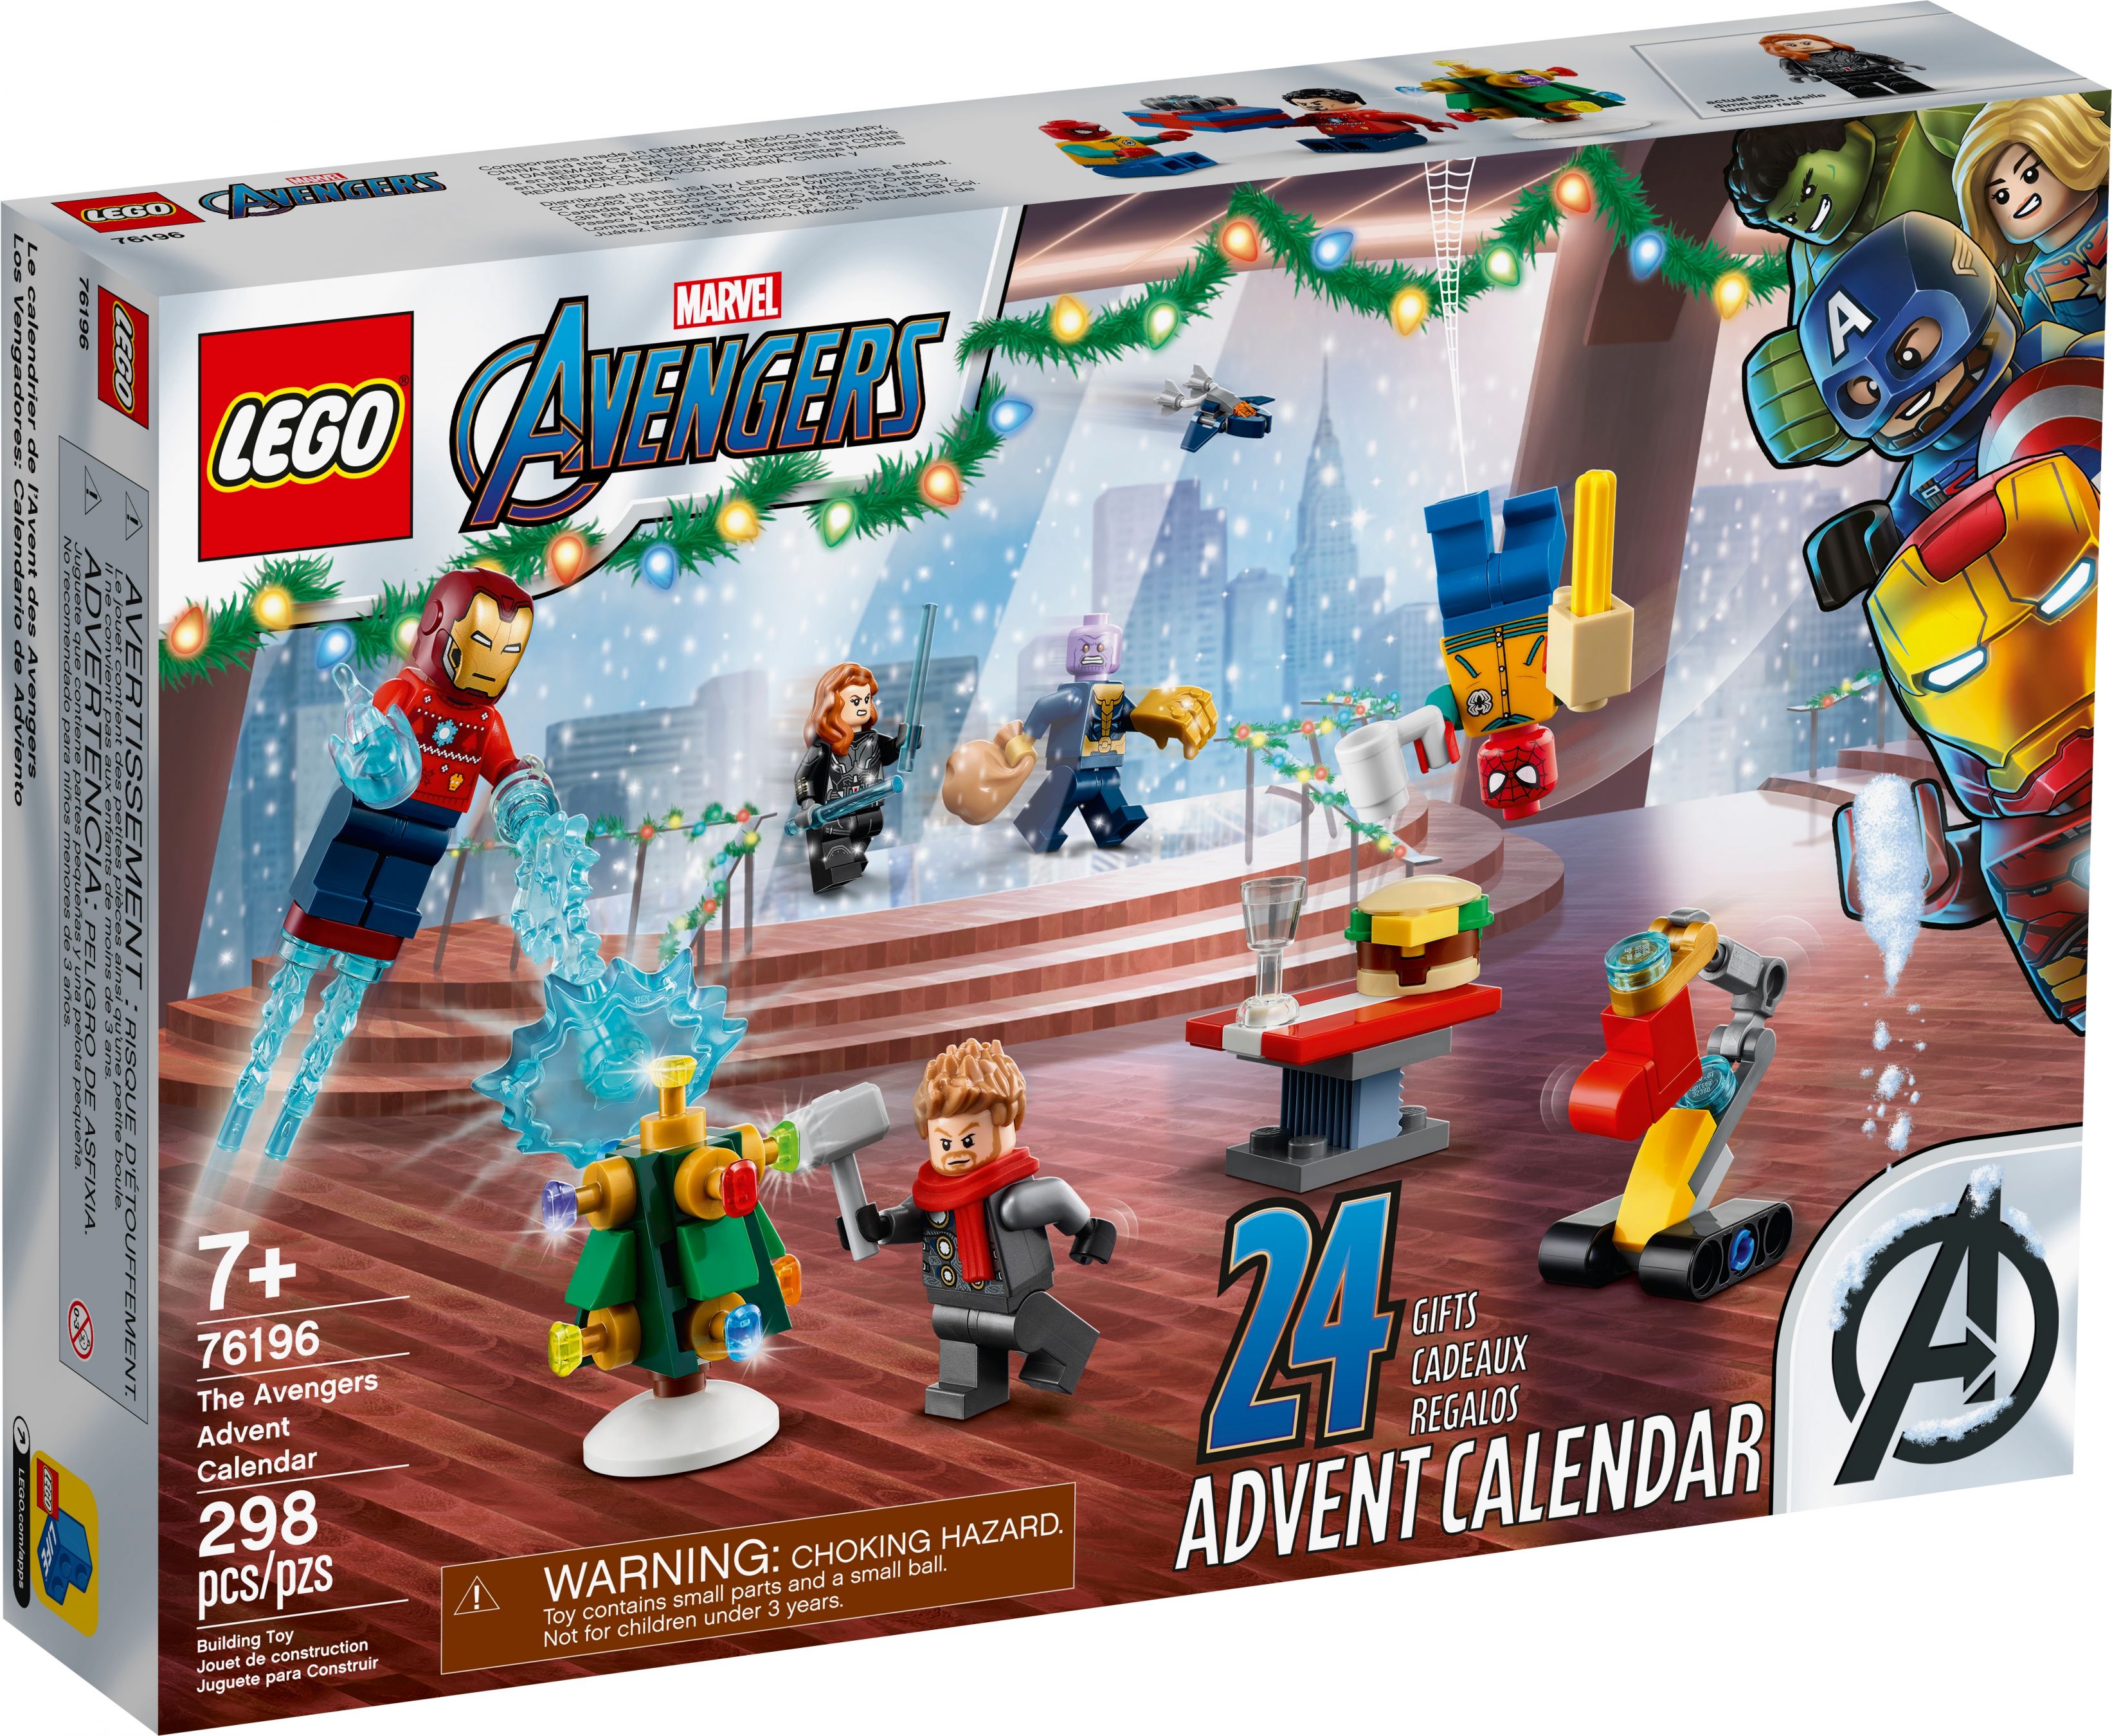 LEGO Super Heroes 76196 LEGO® Marvel Avengers Adventskalender LEGO_76196_alt1.jpg